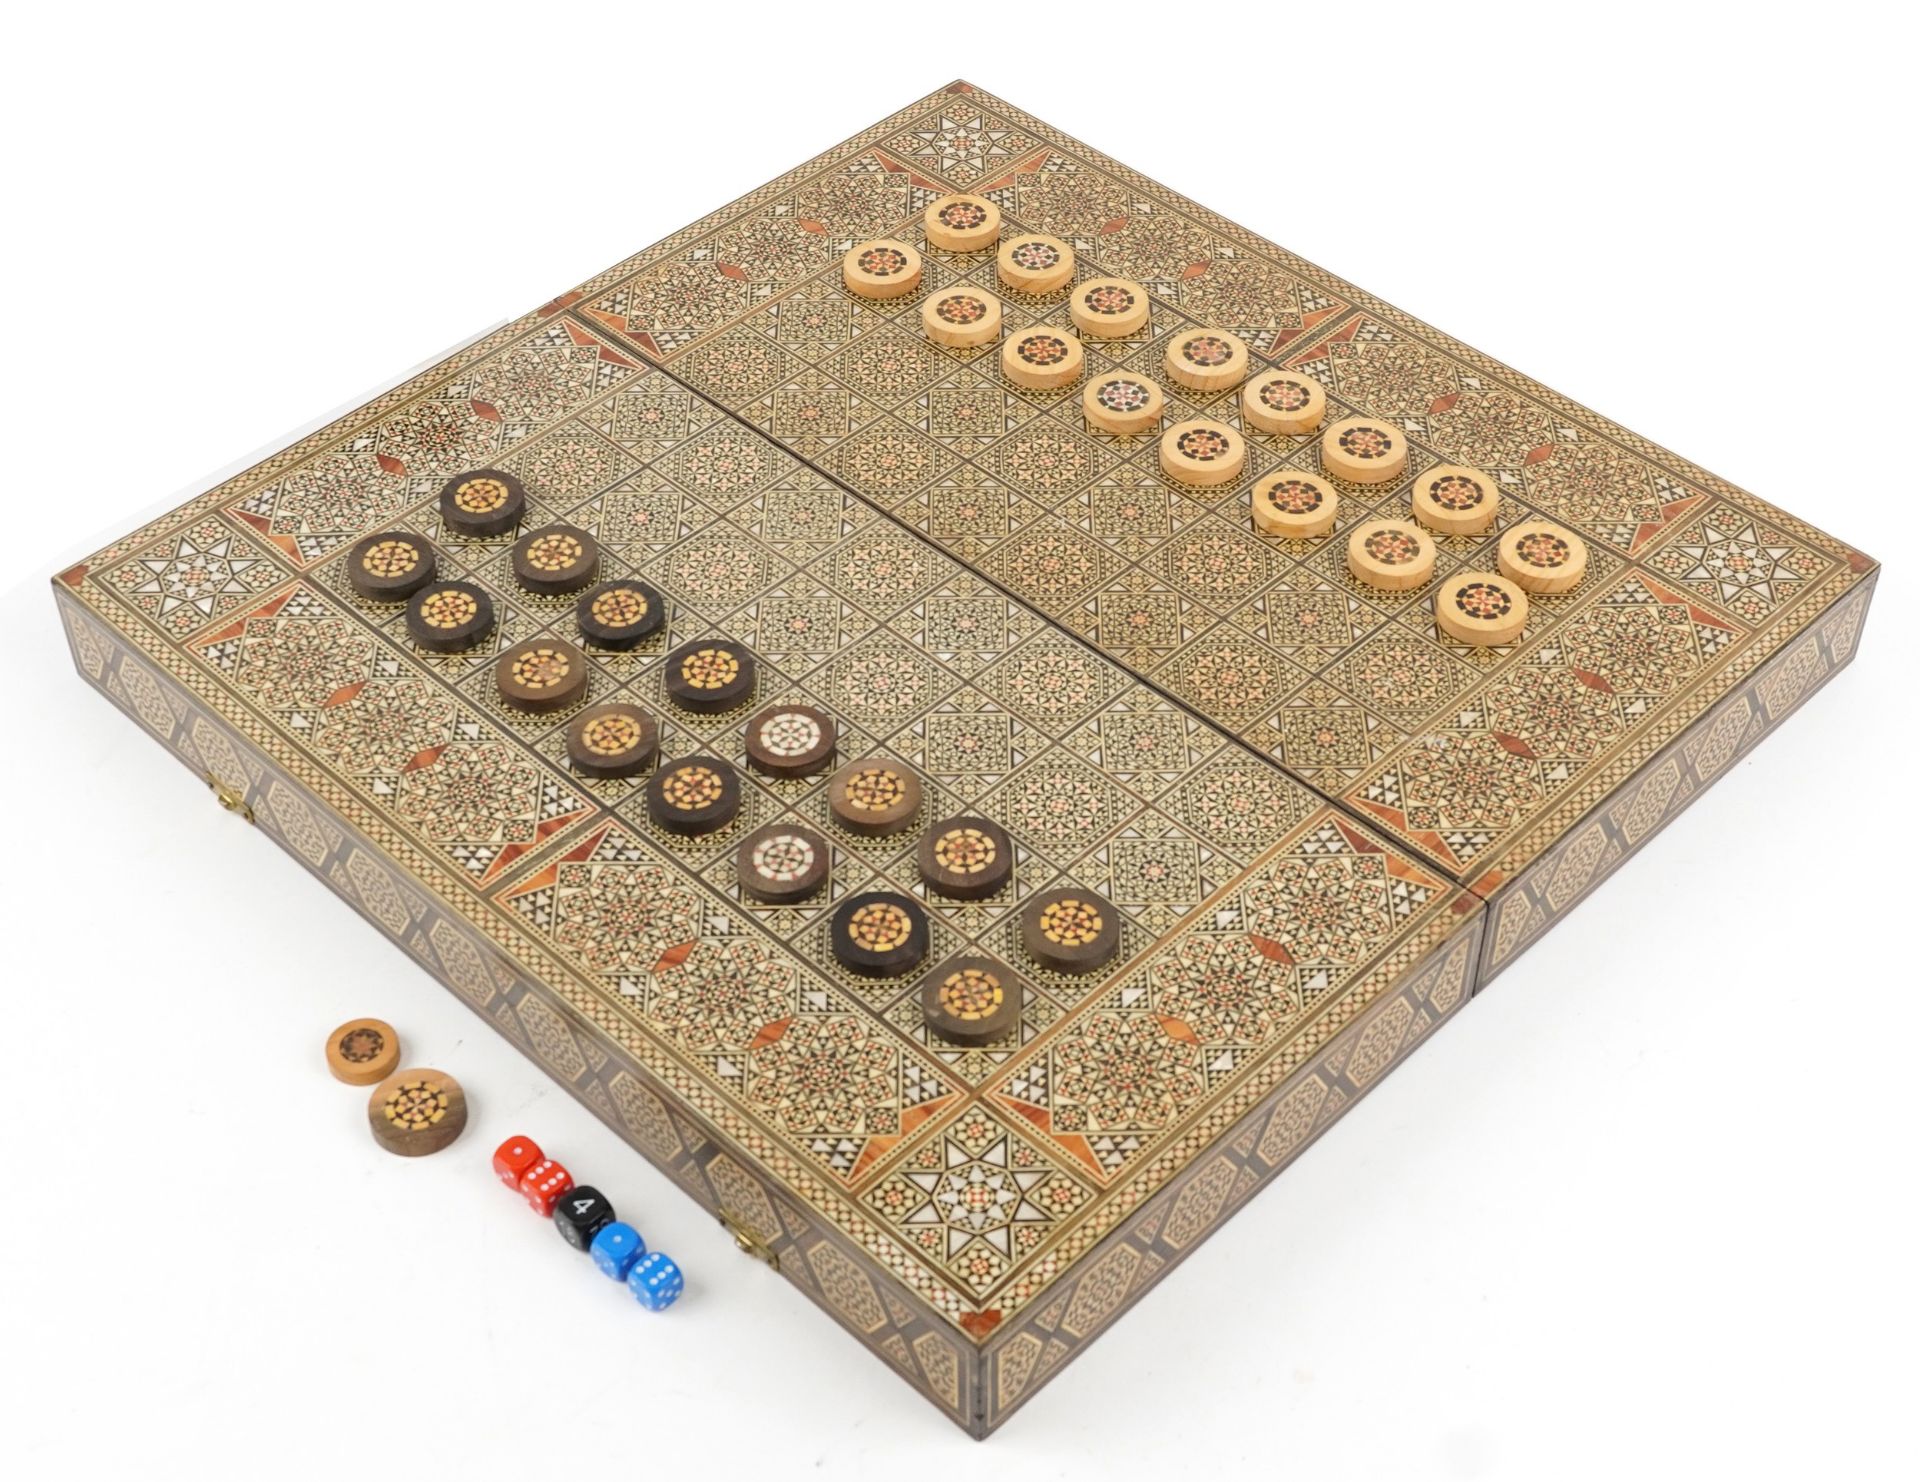 Syrian Moorish style Vizagapatam folding games board with backgammon set, 11cm high x 52cm W x